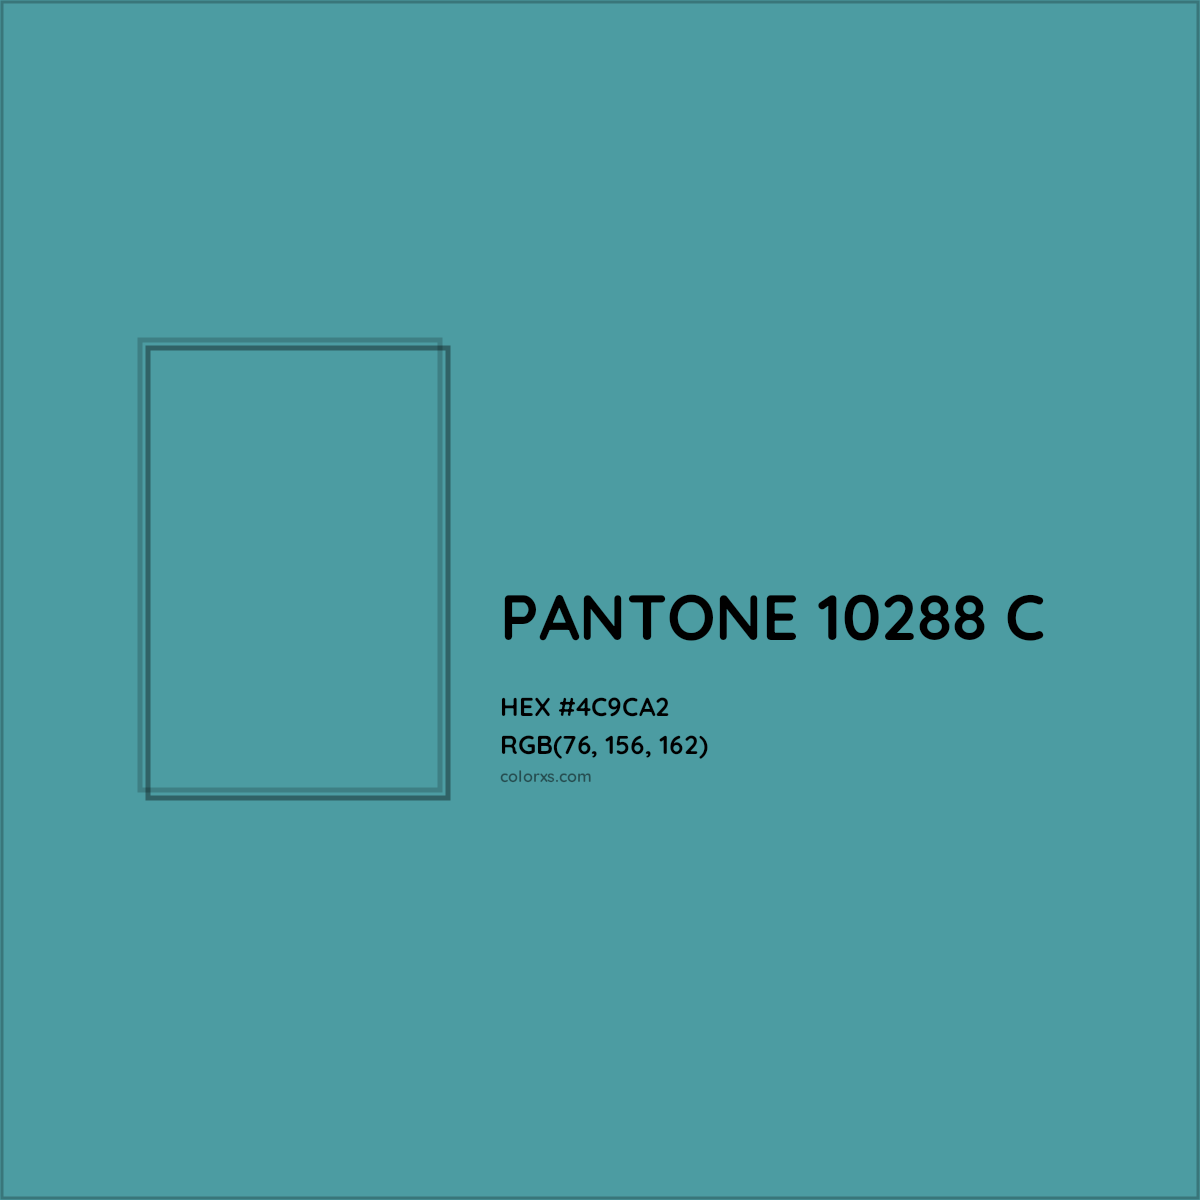 HEX #4C9CA2 PANTONE 10288 C CMS Pantone PMS - Color Code